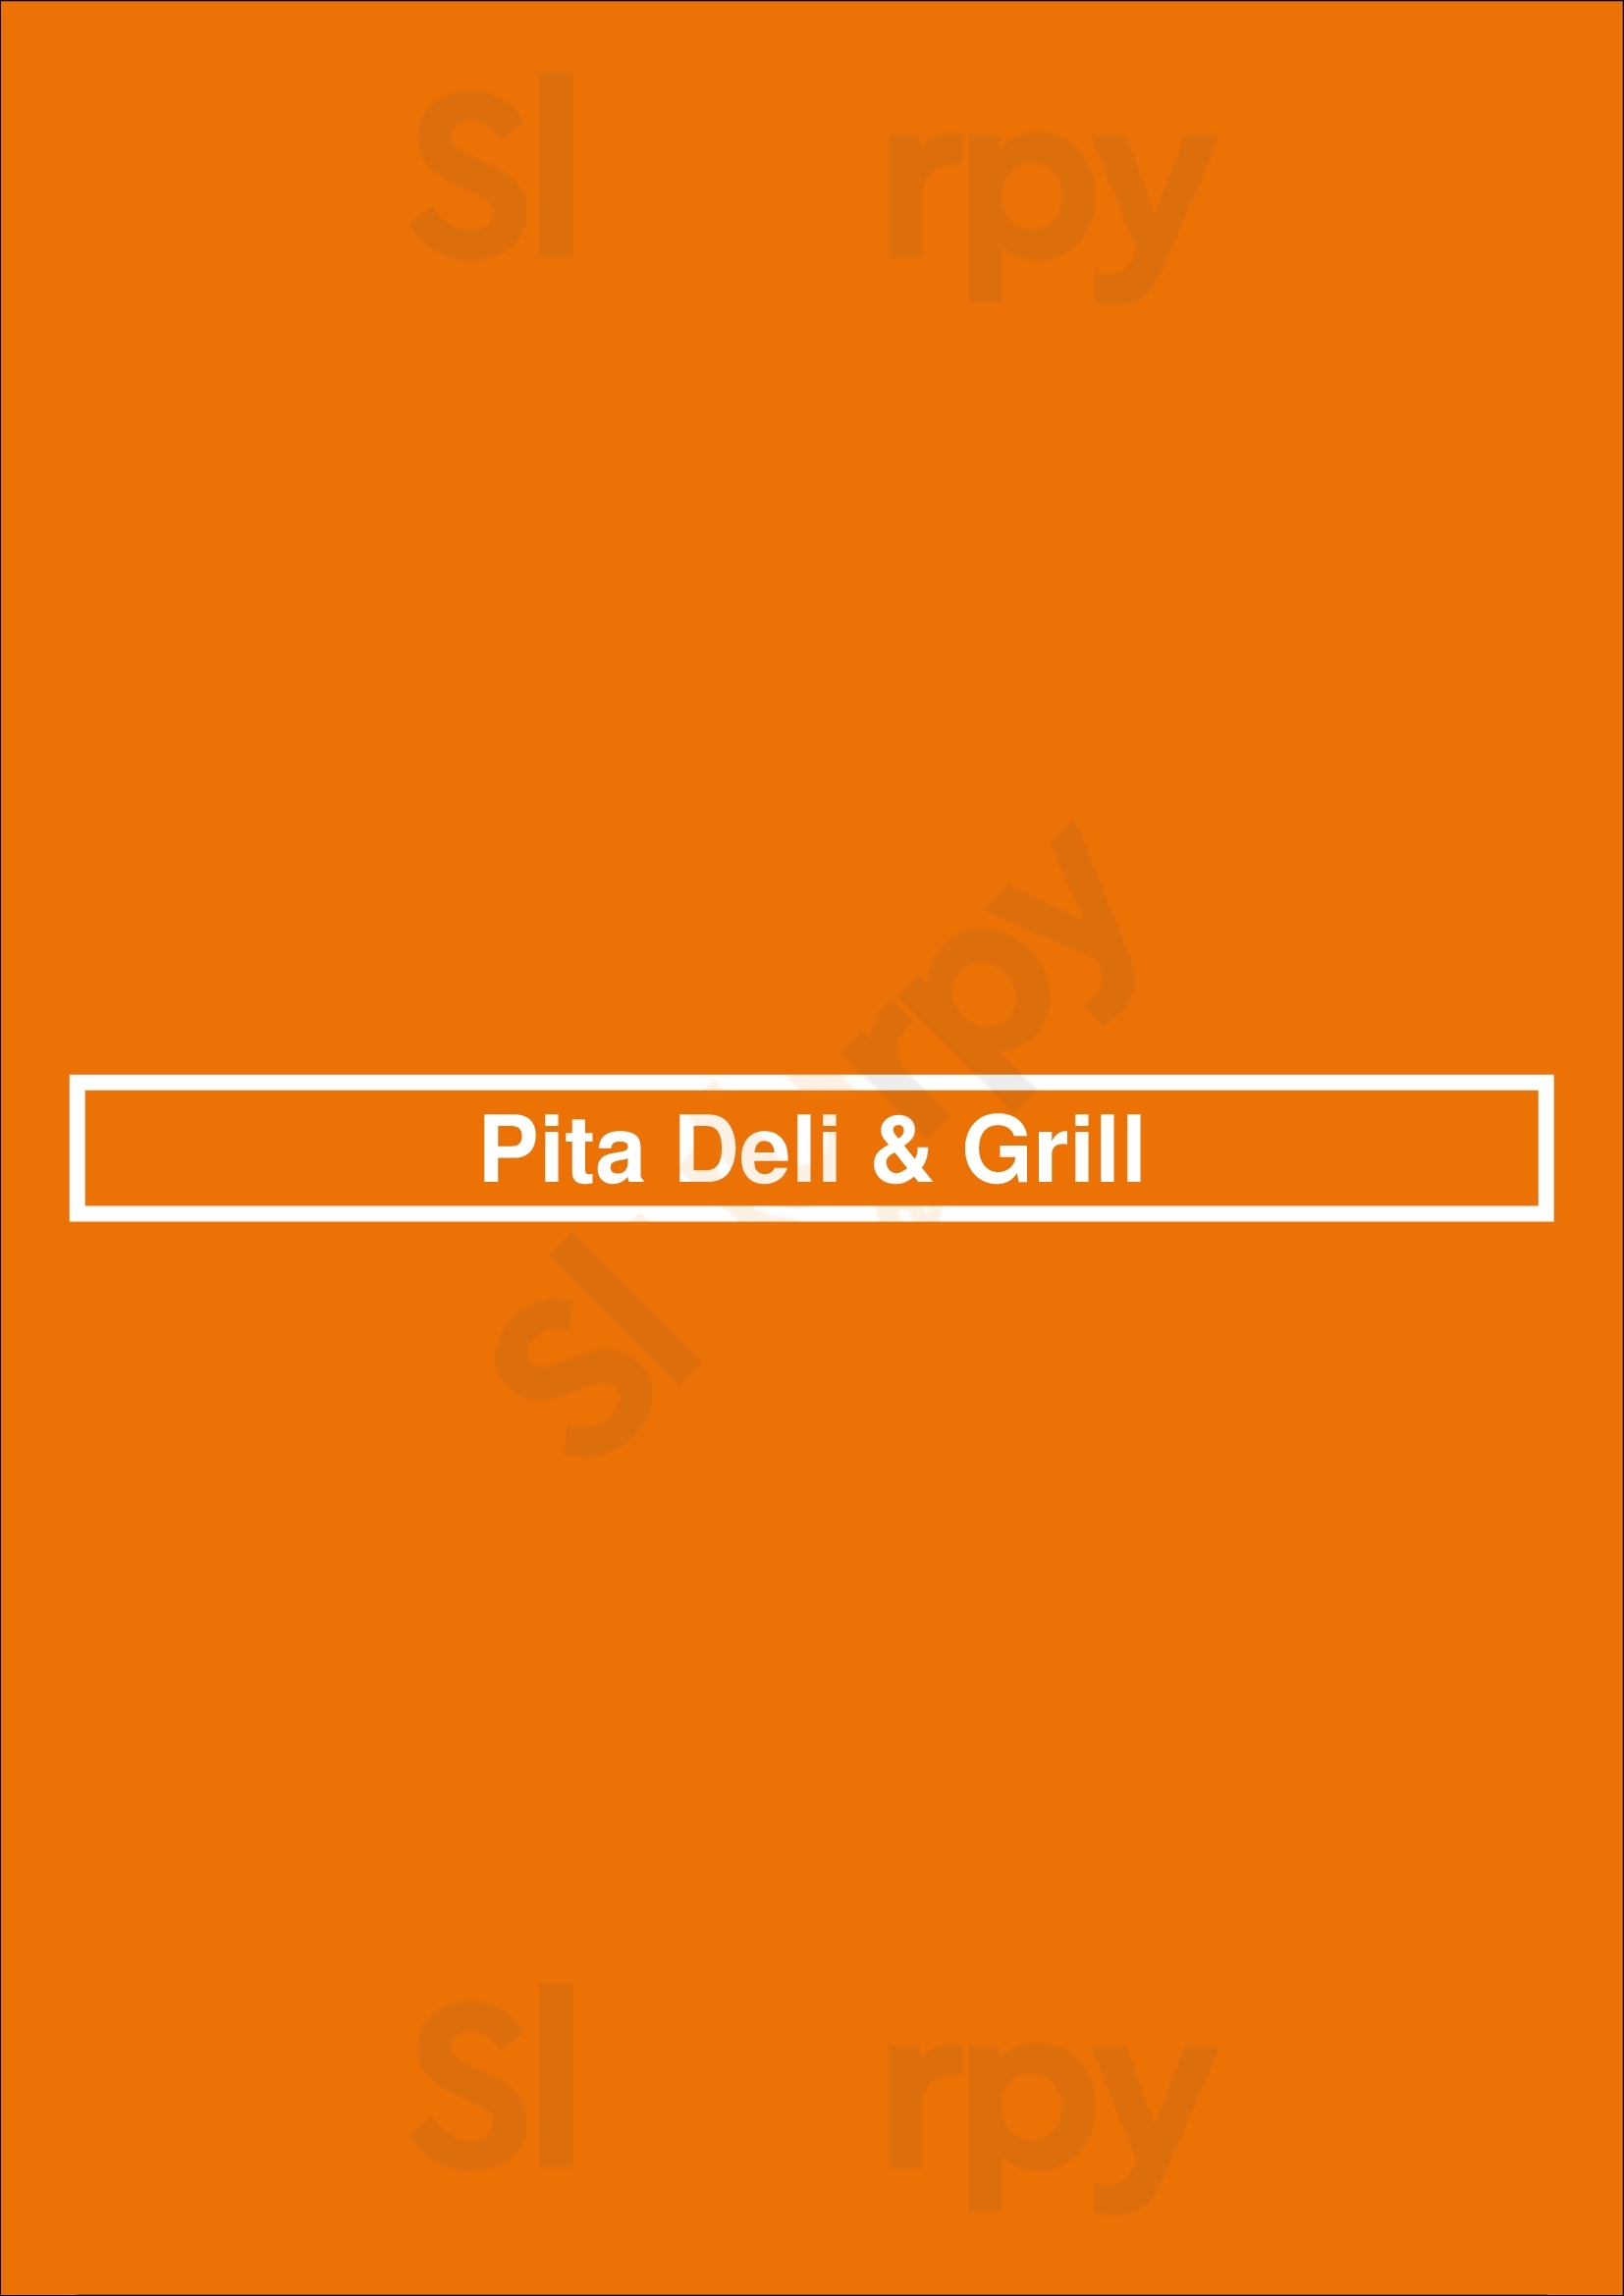 Pita Deli & Grill Oshawa Menu - 1